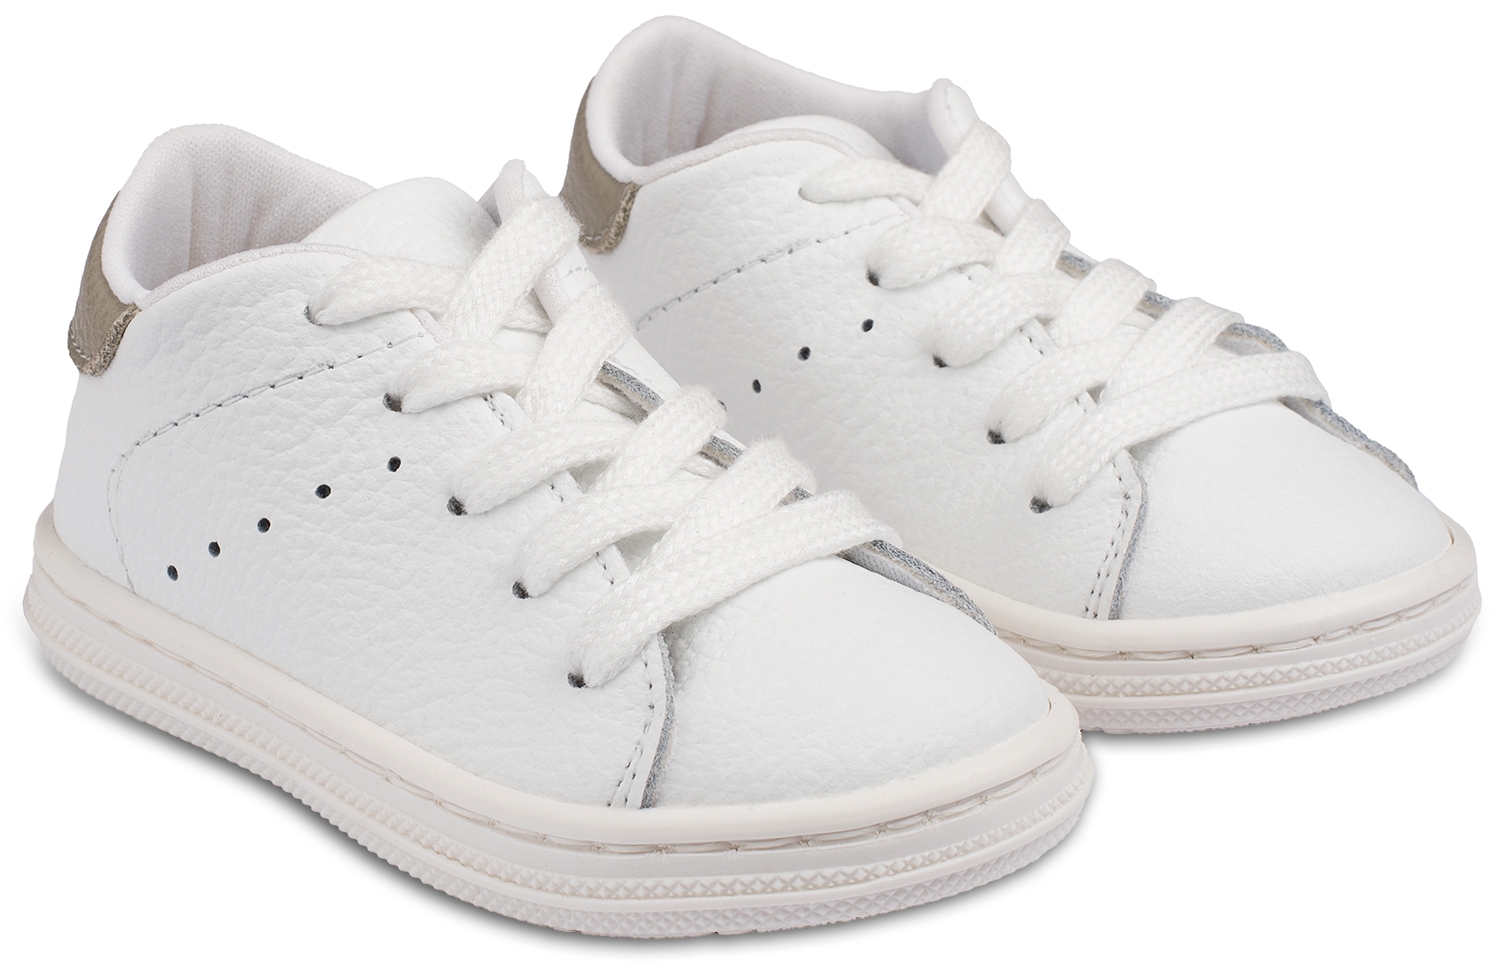 Babywalker Sneaker Λευκό γκρι - Βαπτιστικά παπούτσια για αγόρι